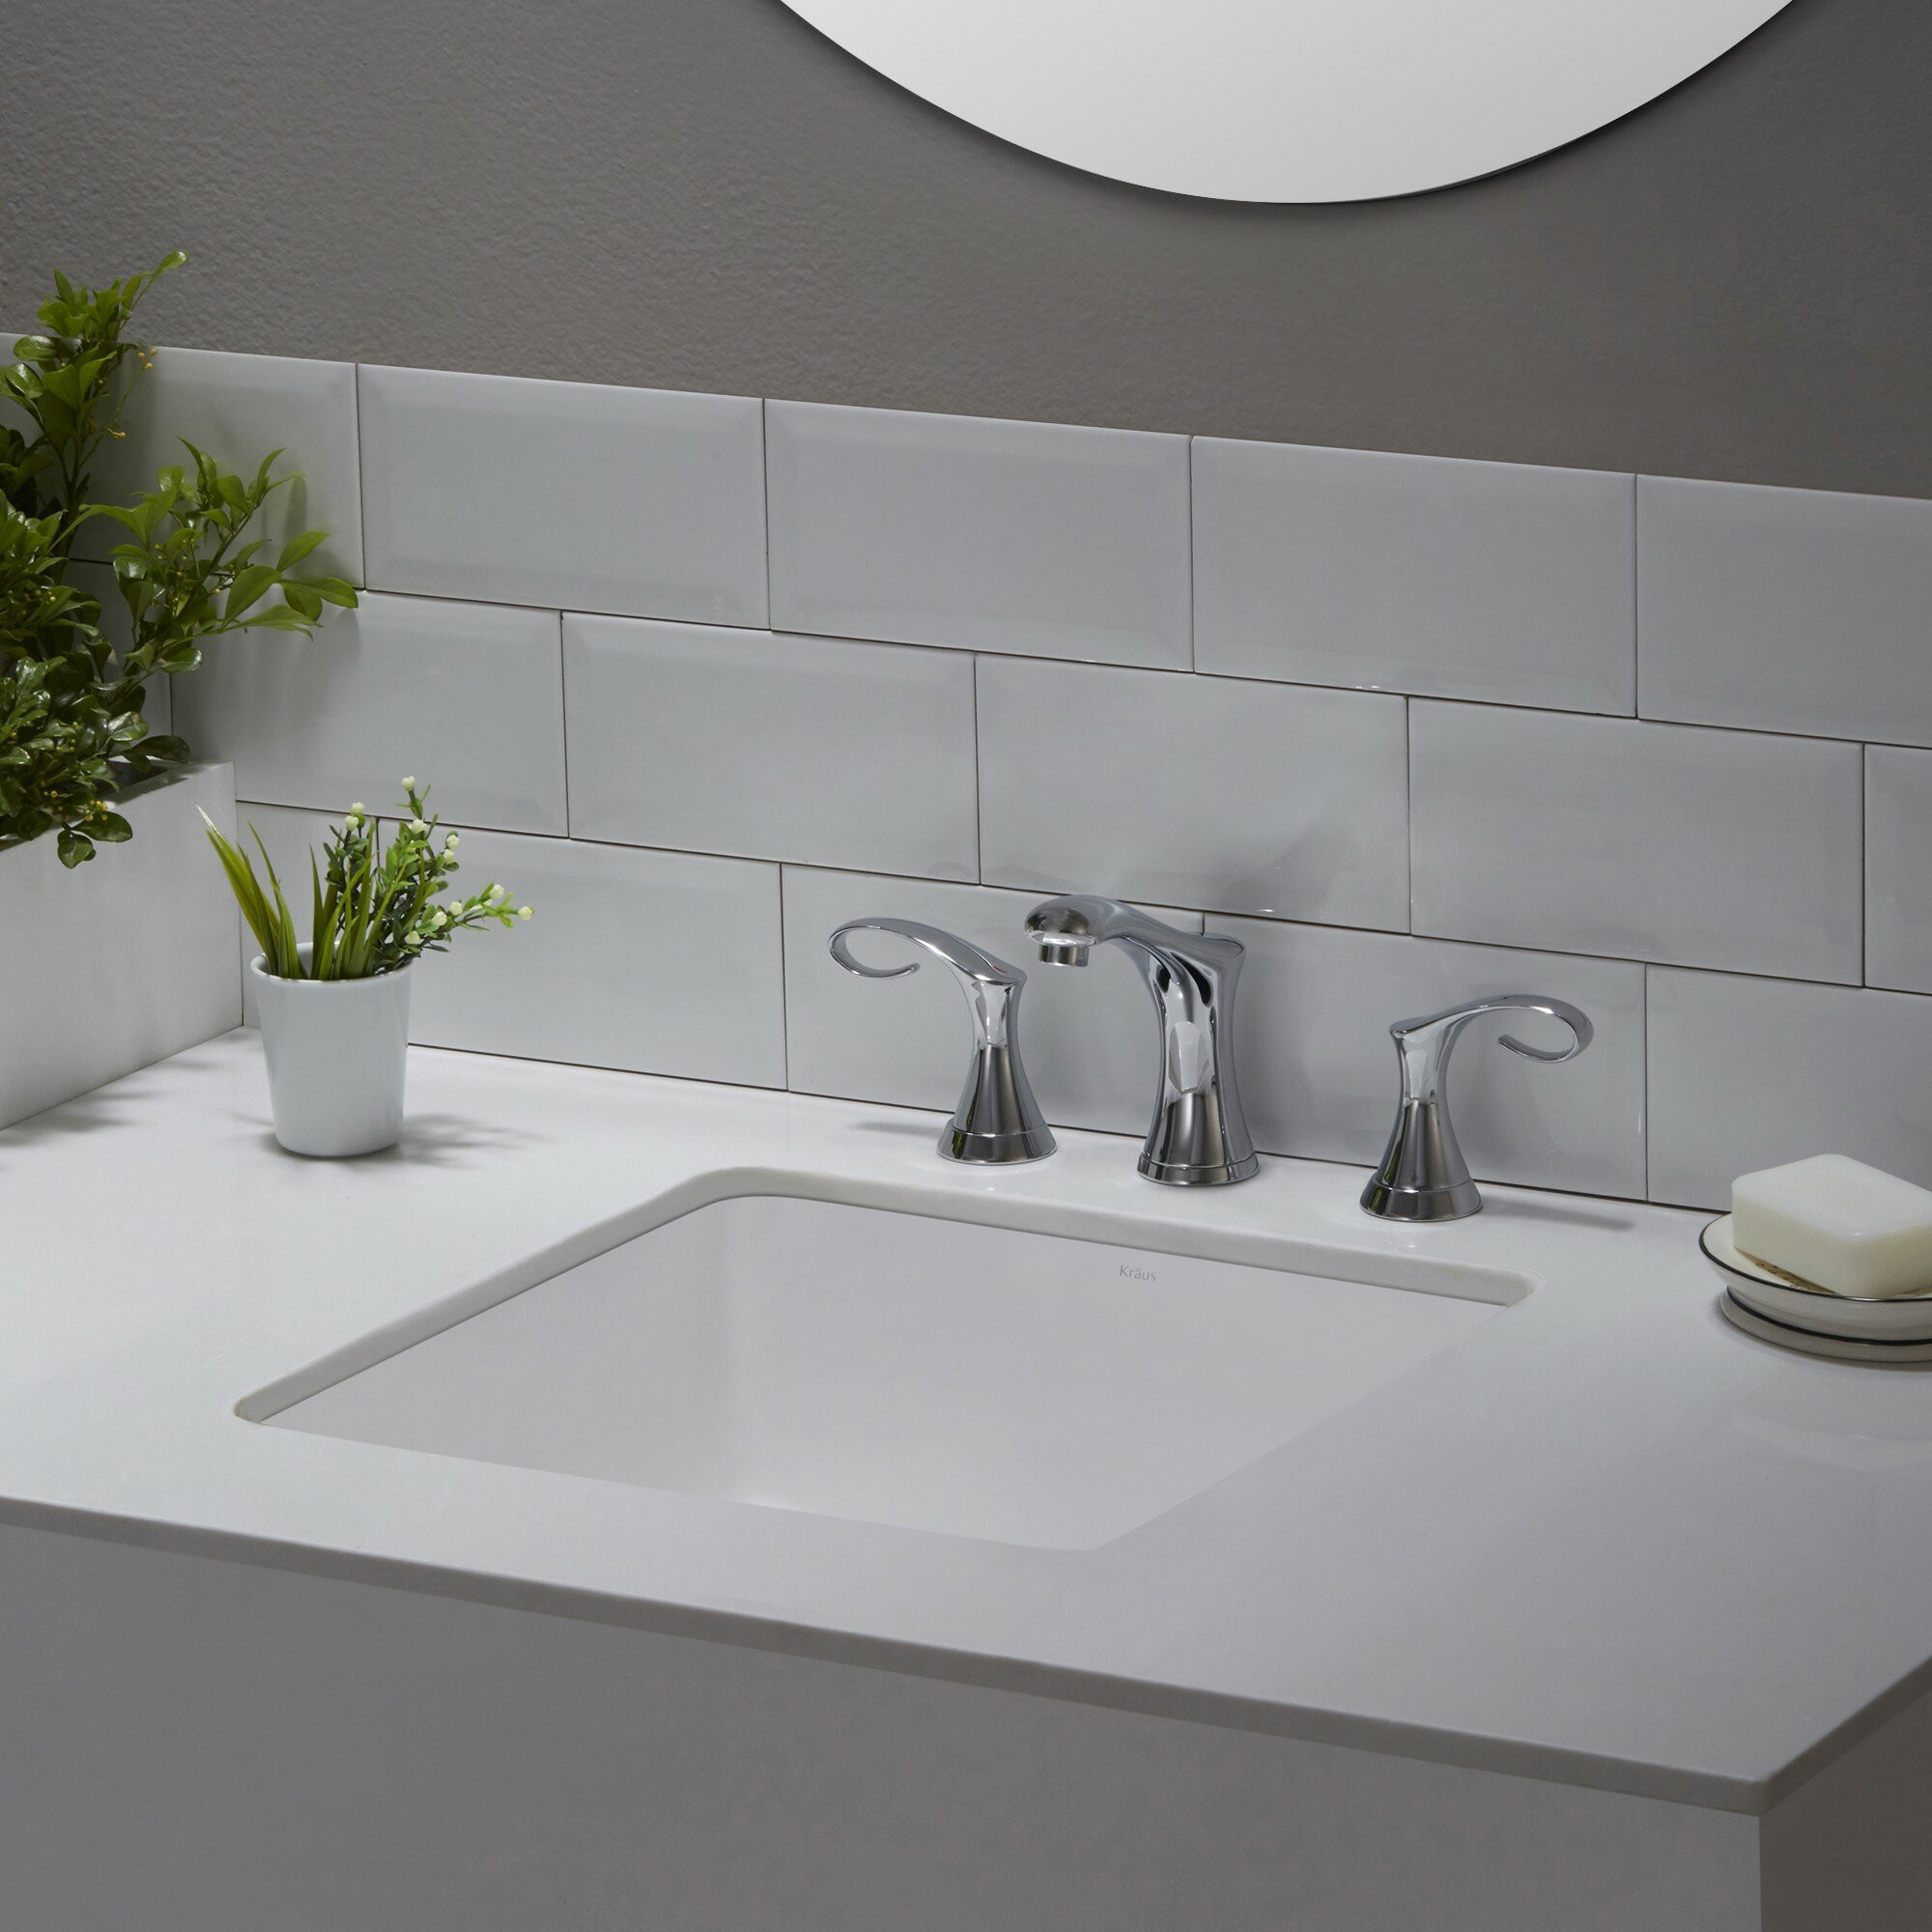 Bathroom Sink Undermount
 Kraus Elavo™ Ceramic Square Undermount Bathroom Sink with